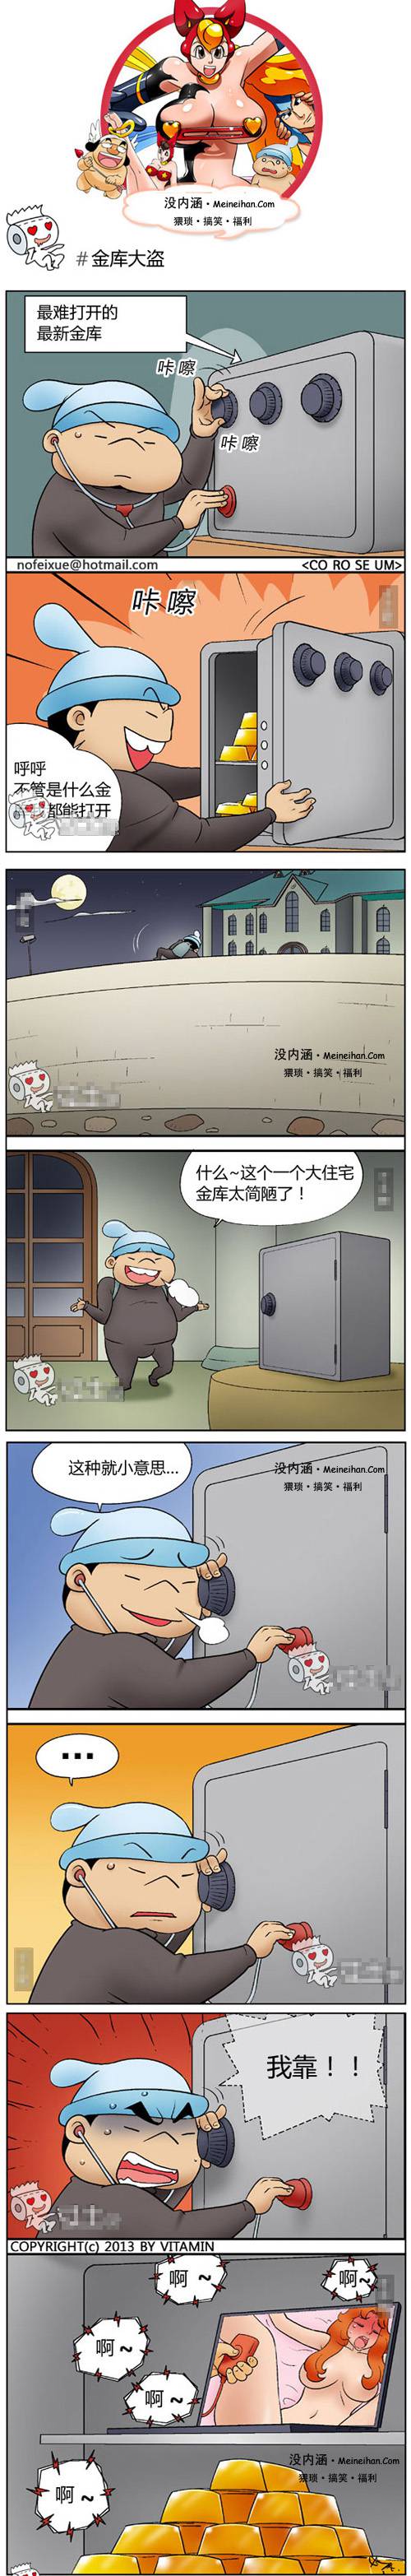 邪恶漫画爆笑囧图第124刊：冷战